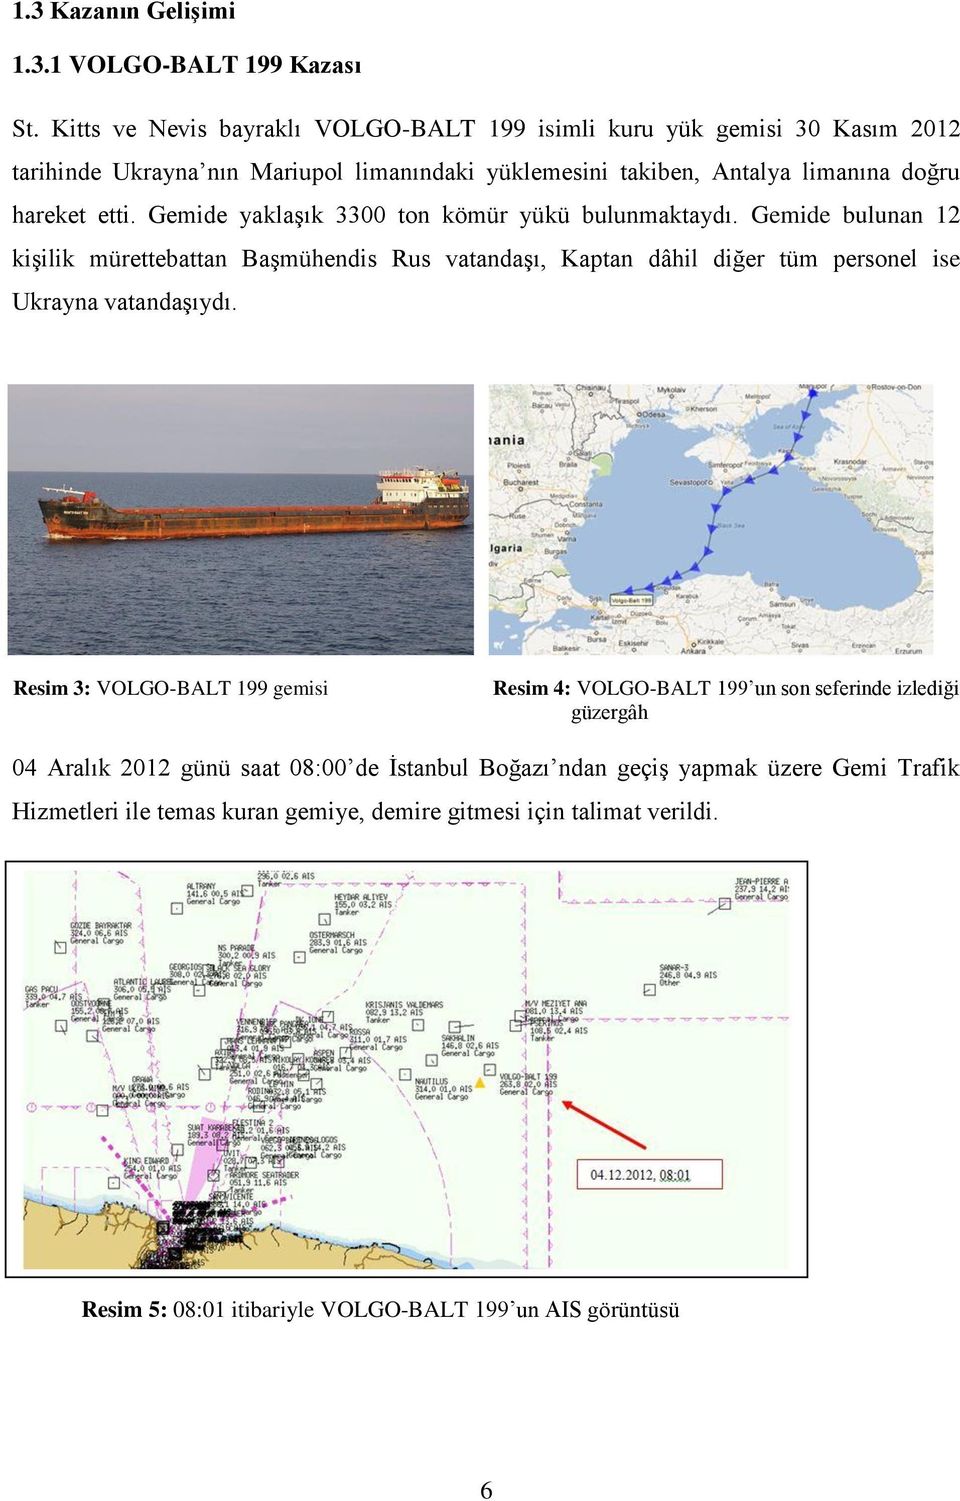 Gemide yaklaşık 3300 ton kömür yükü bulunmaktaydı. Gemide bulunan 12 kişilik mürettebattan Başmühendis Rus vatandaşı, Kaptan dâhil diğer tüm personel ise Ukrayna vatandaşıydı.